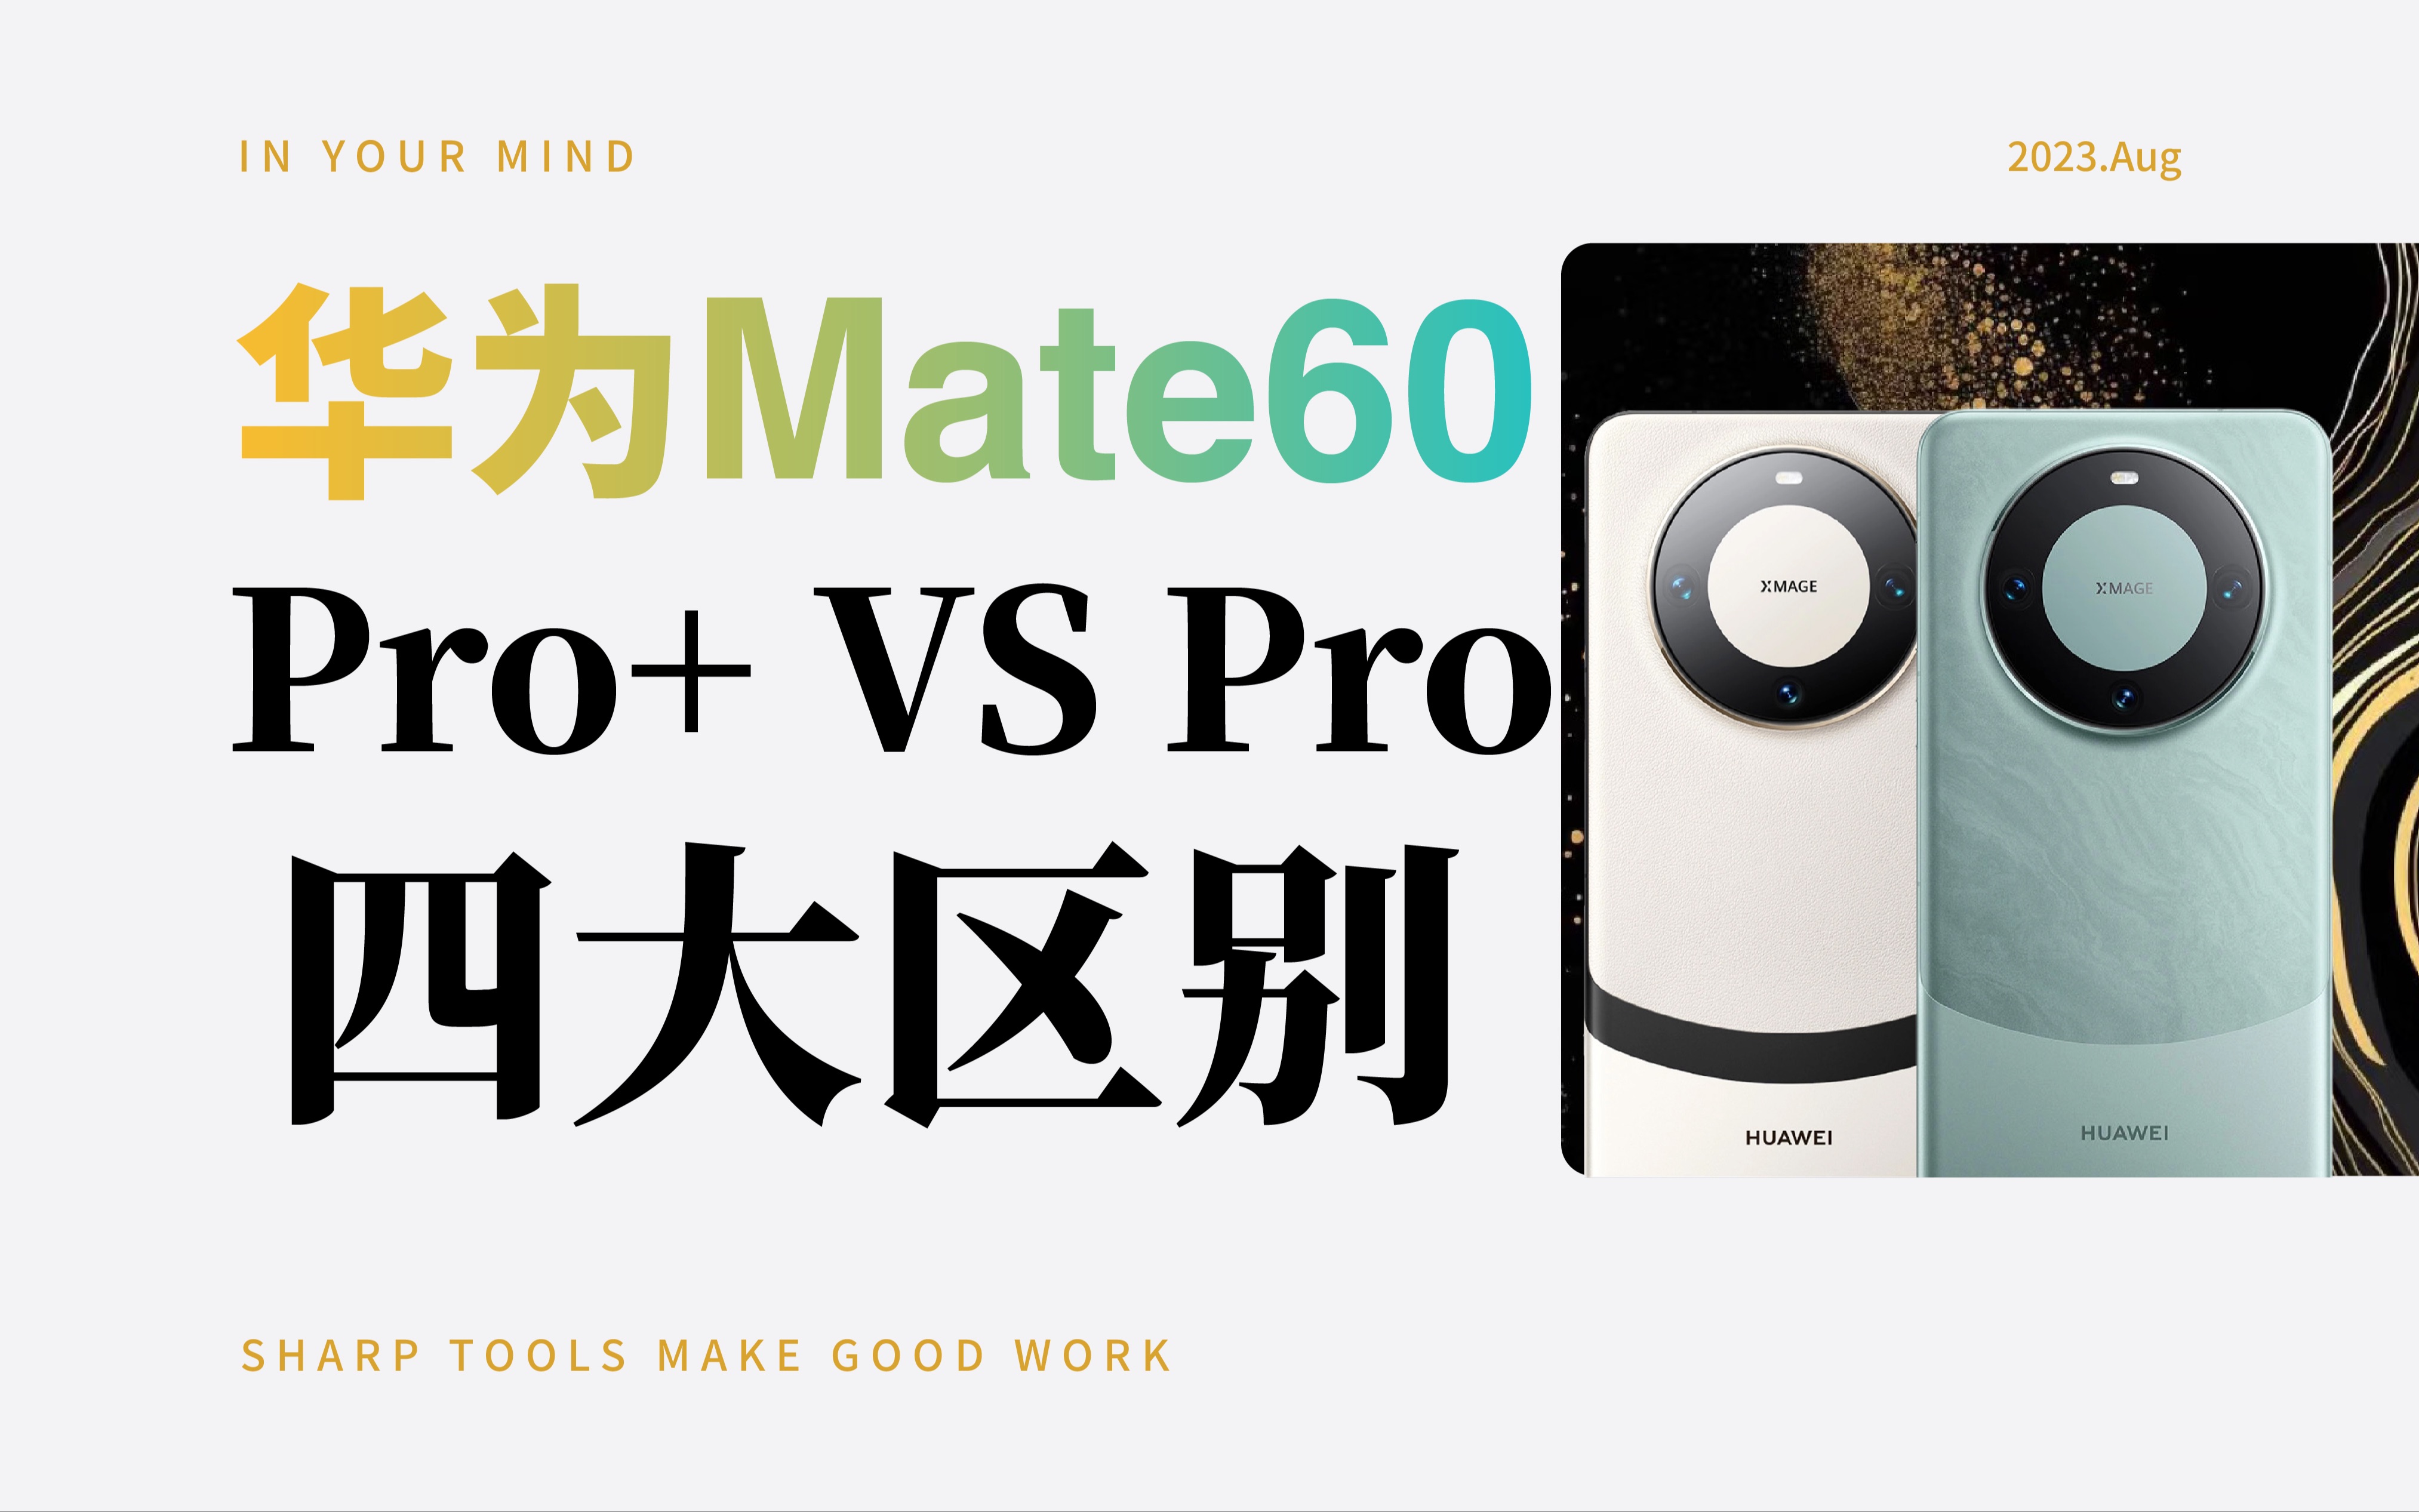 一分钟了解华为Mate60 Pro+和 pro的4大区别！